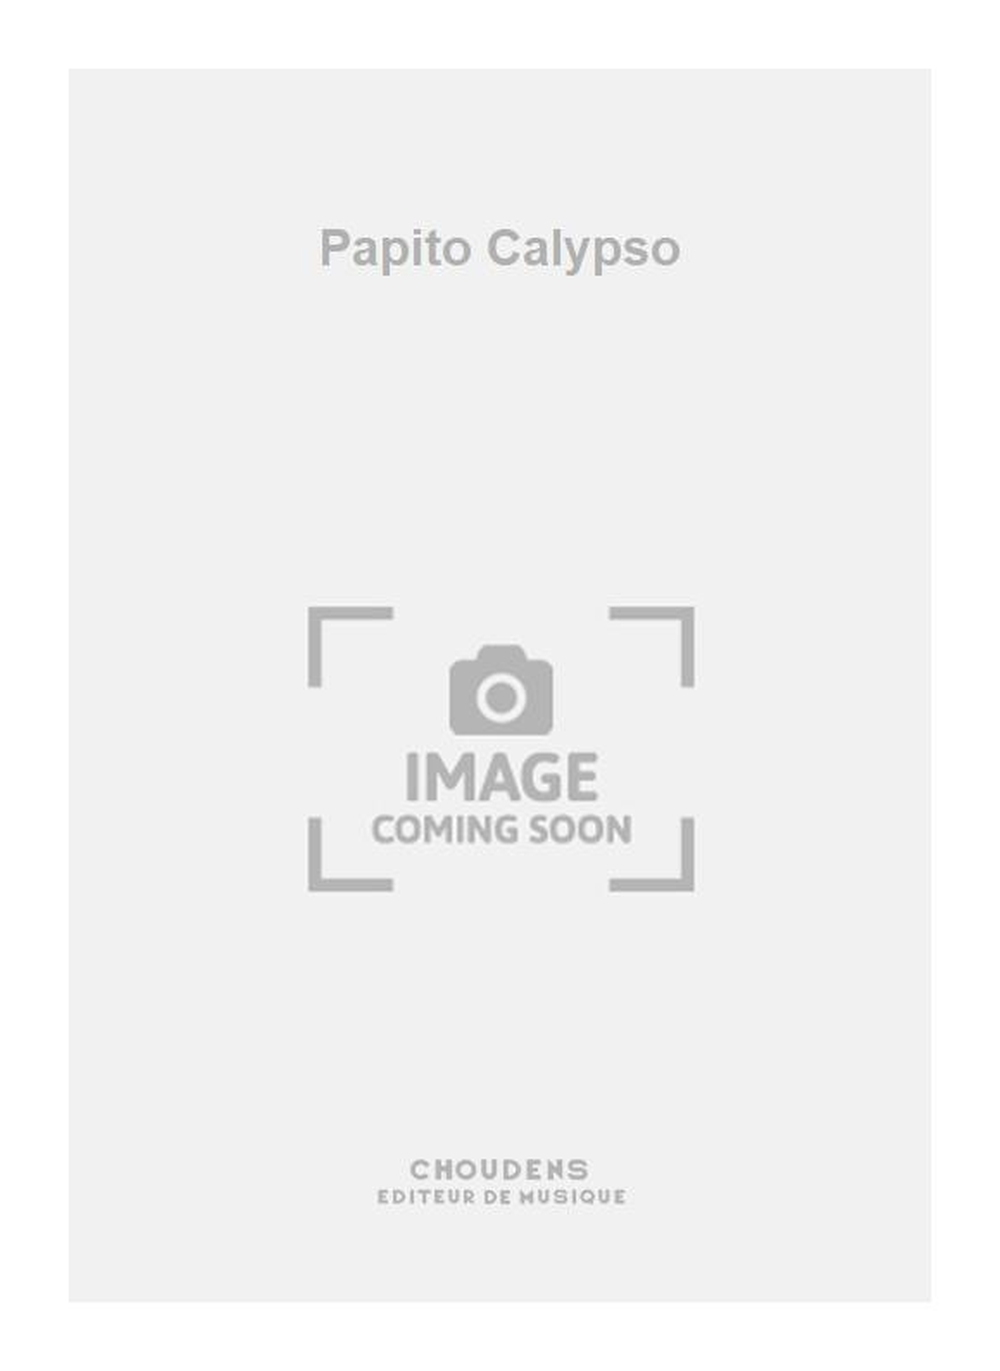 Papito Calypso